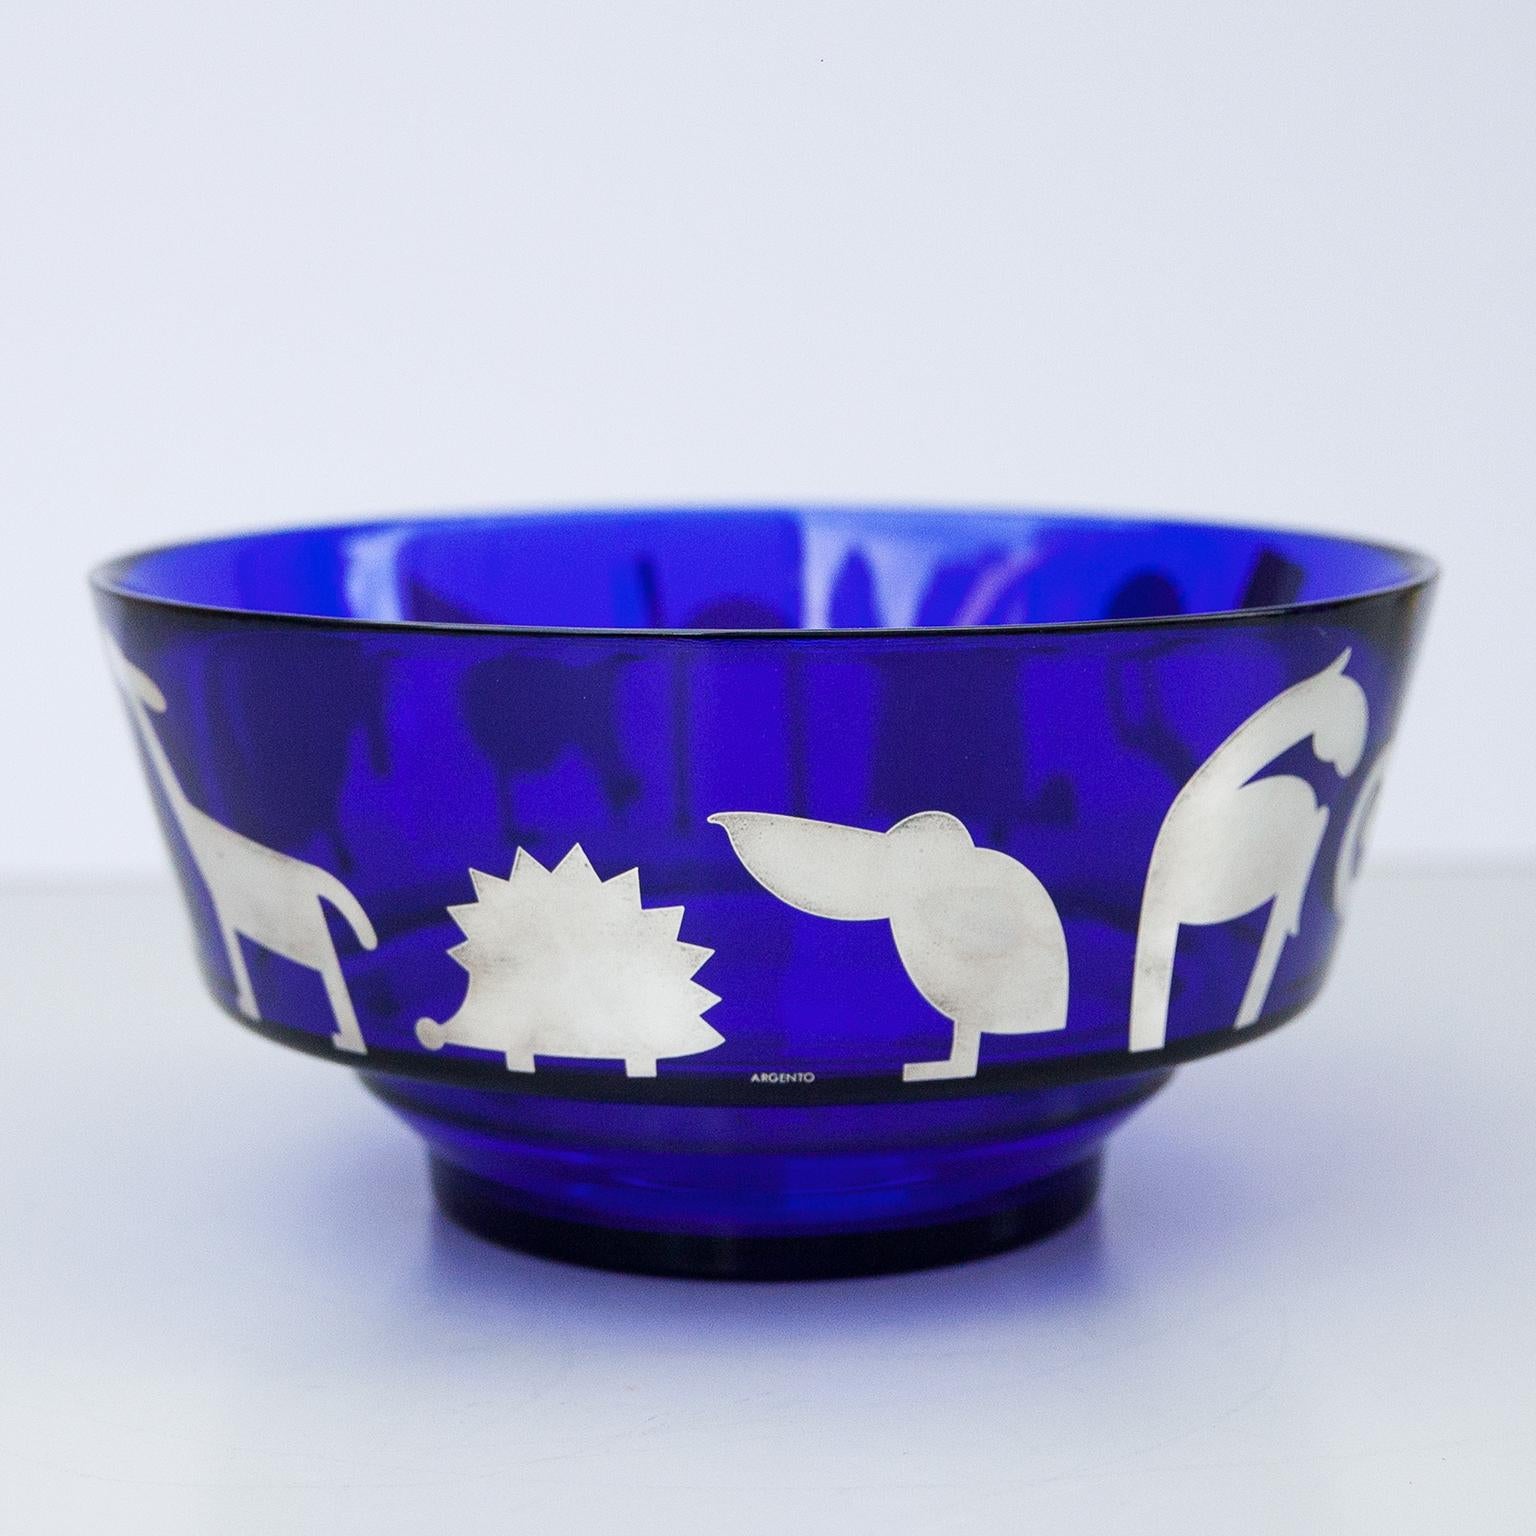 Magnifique et rare bol en verre d'art Egizia, conçu par Ettore Sottsass. Ce bol épais et lourd de couleur bleu cobalt est décoré d'animaux sérigraphiés à la main, en 